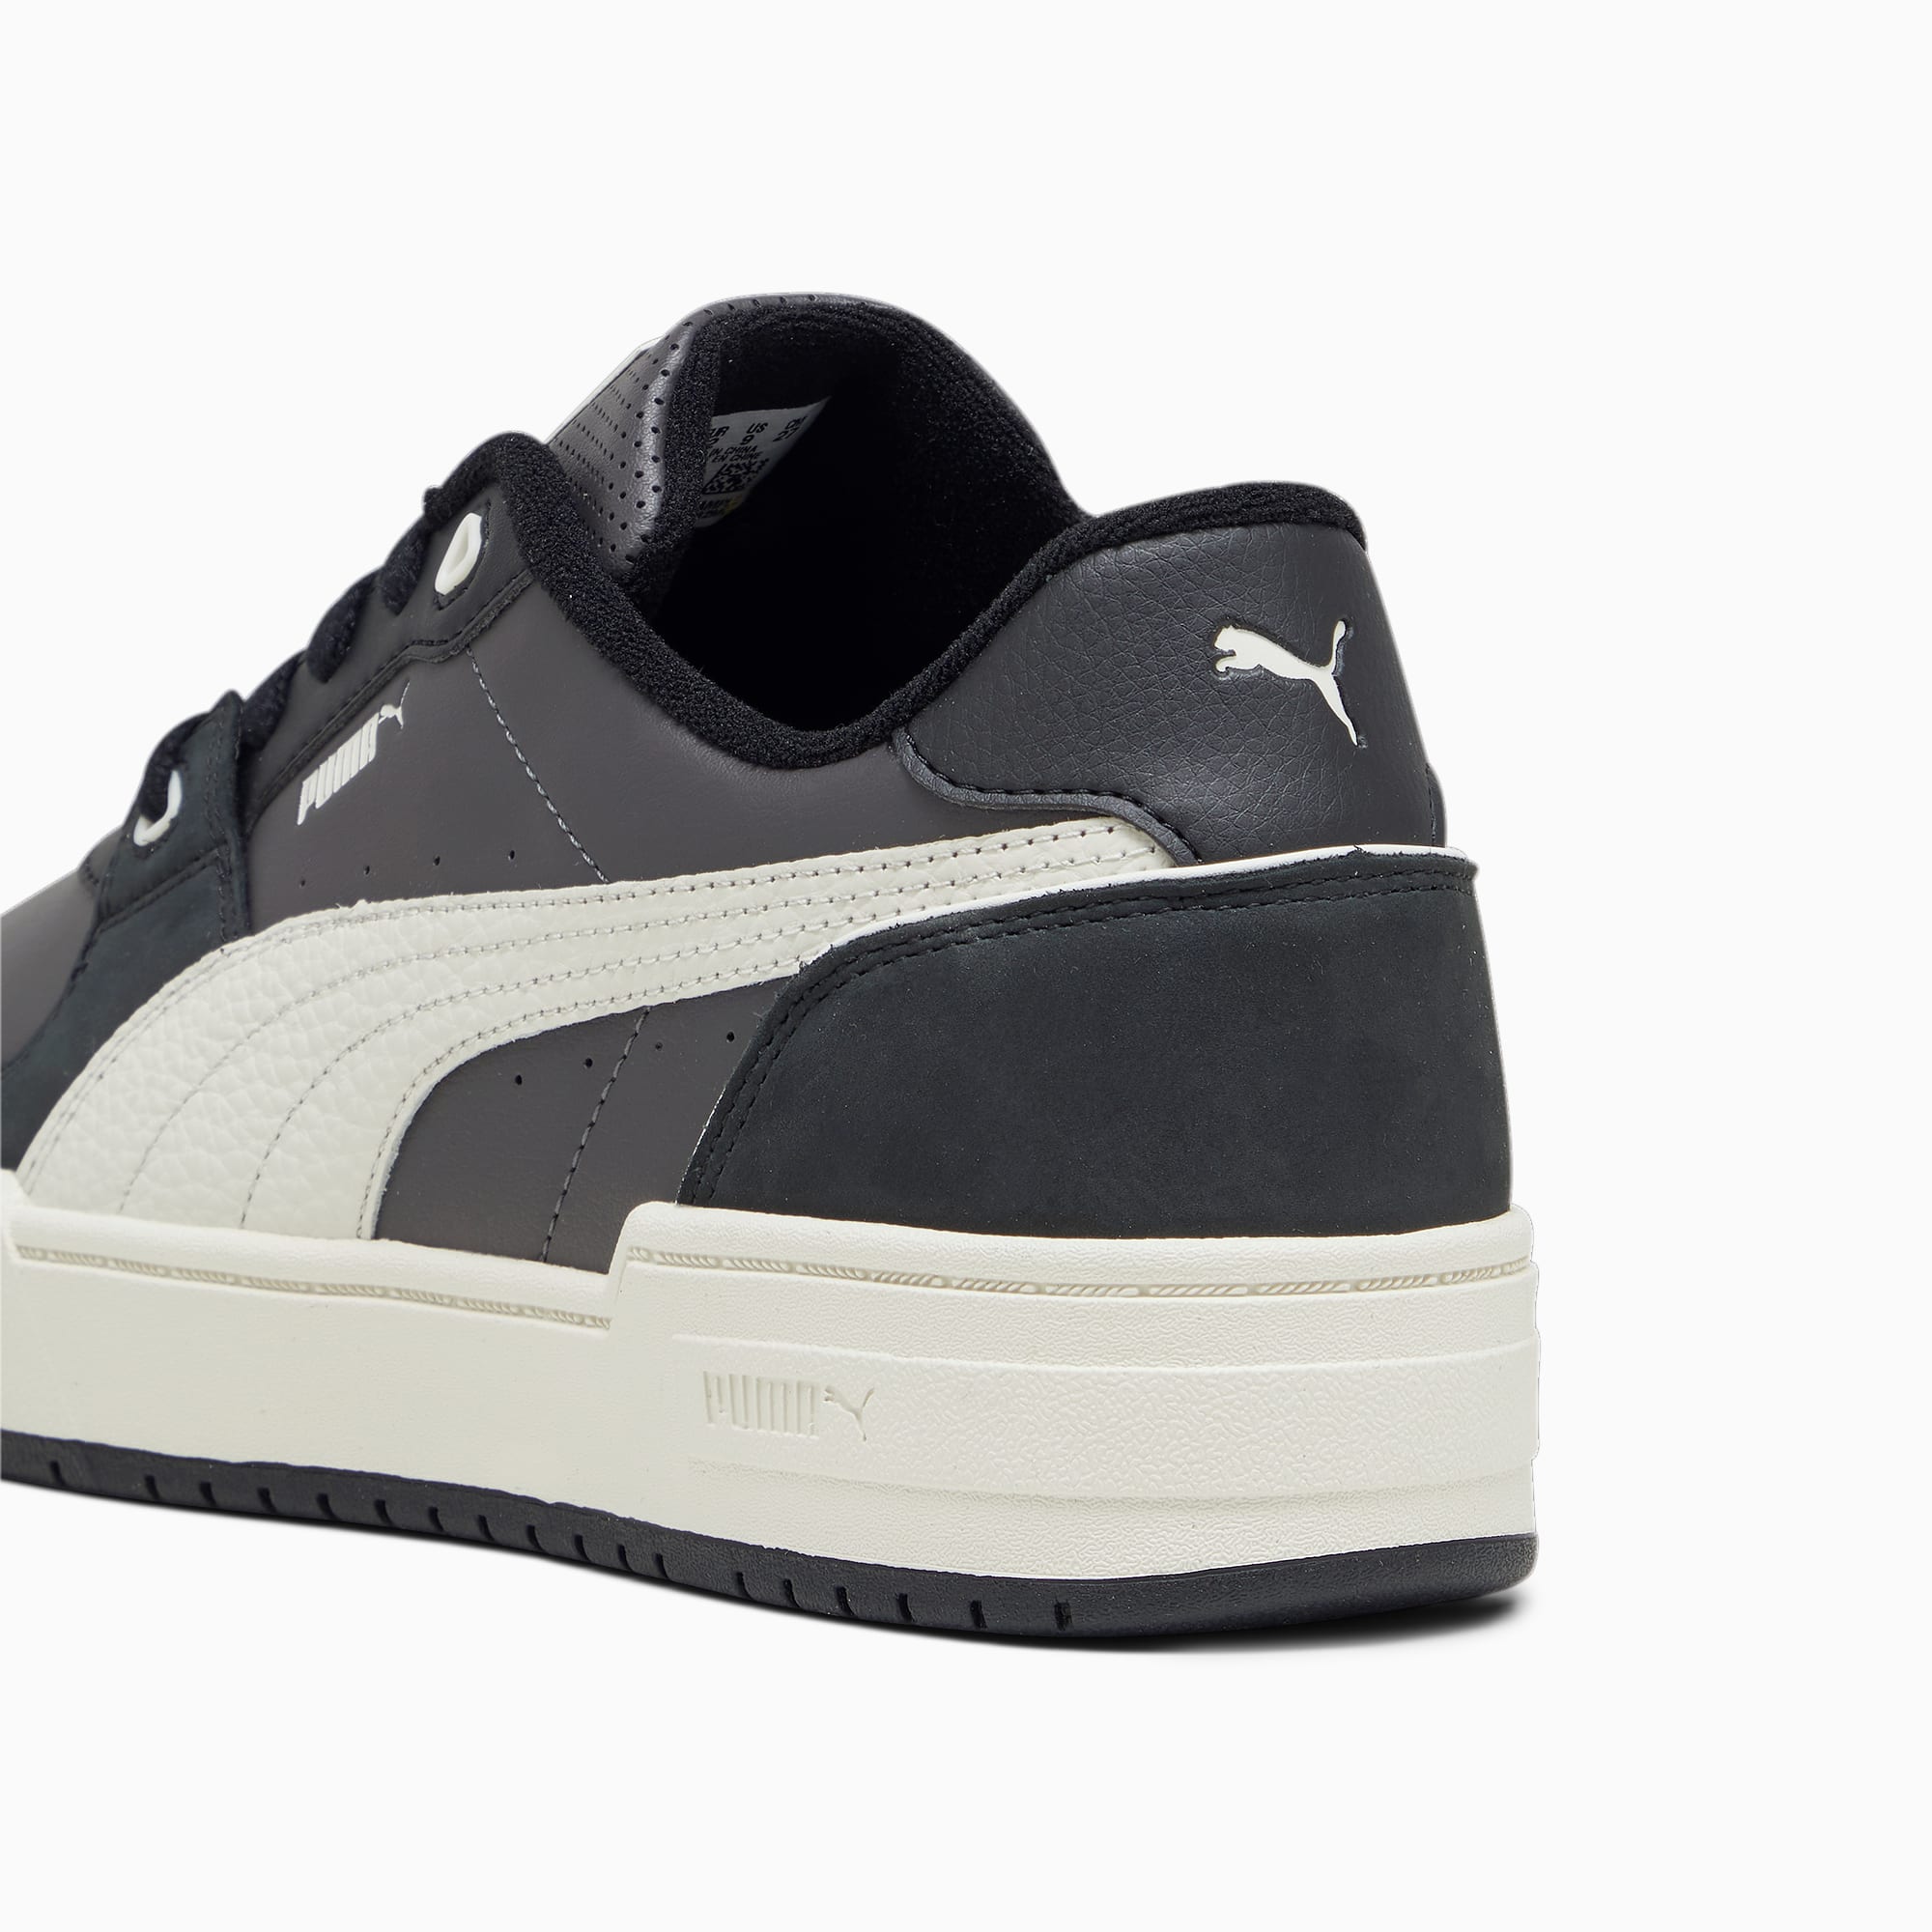 PUMA Chaussure Sneakers CA Pro Lux II Pour Homme, Gris/Noir